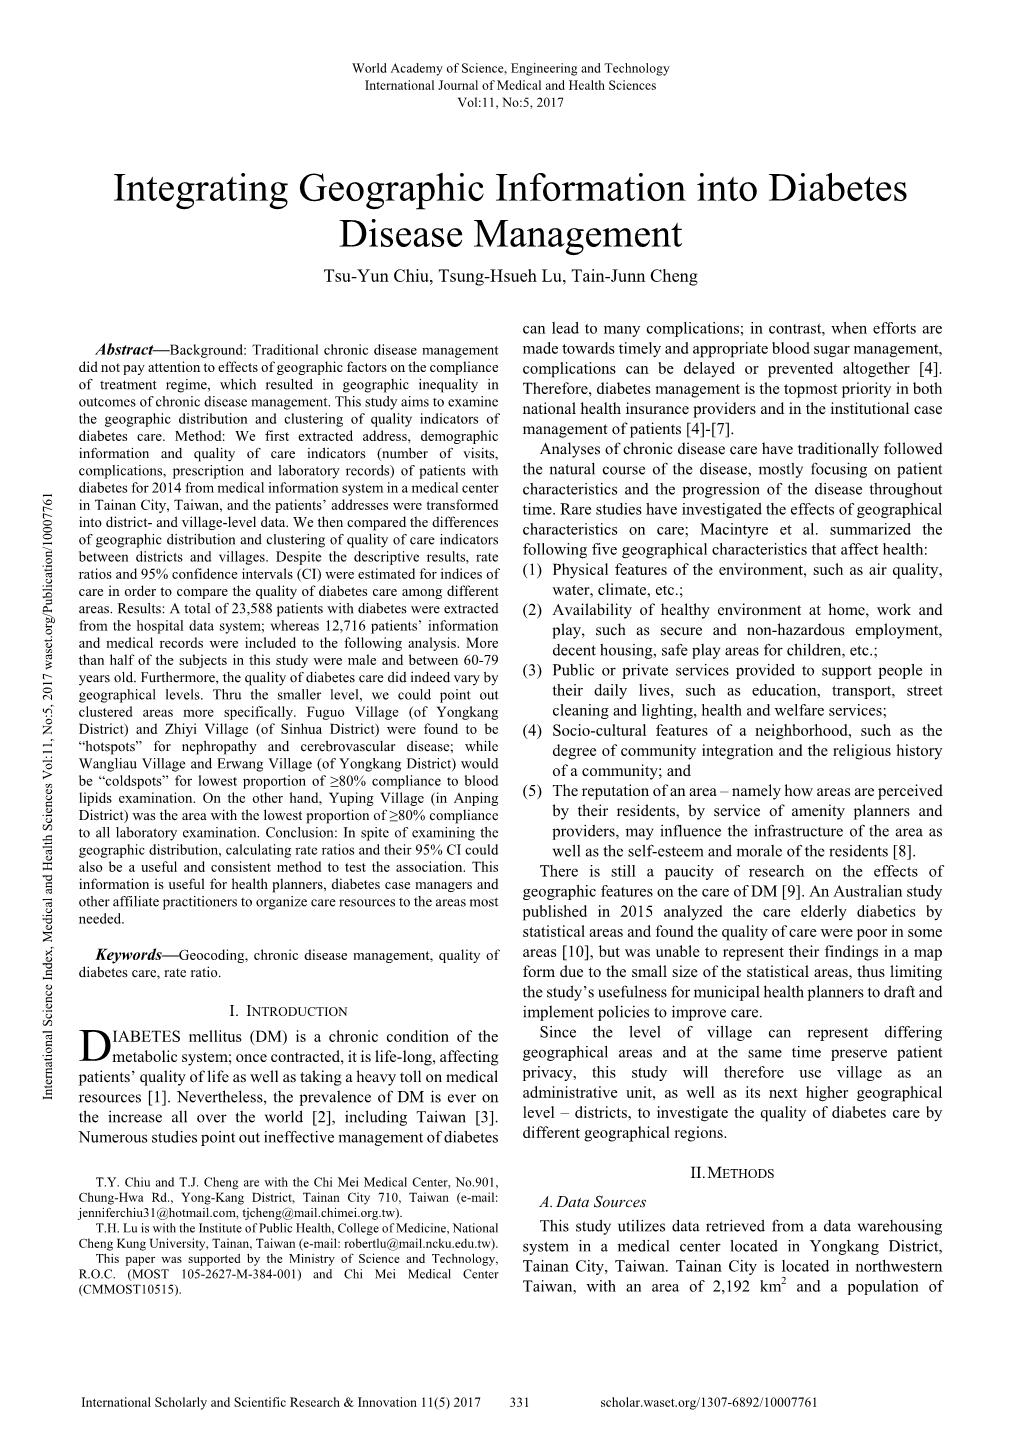 Integrating Geographic Information Into Diabetes Disease Management Tsu-Yun Chiu, Tsung-Hsueh Lu, Tain-Junn Cheng